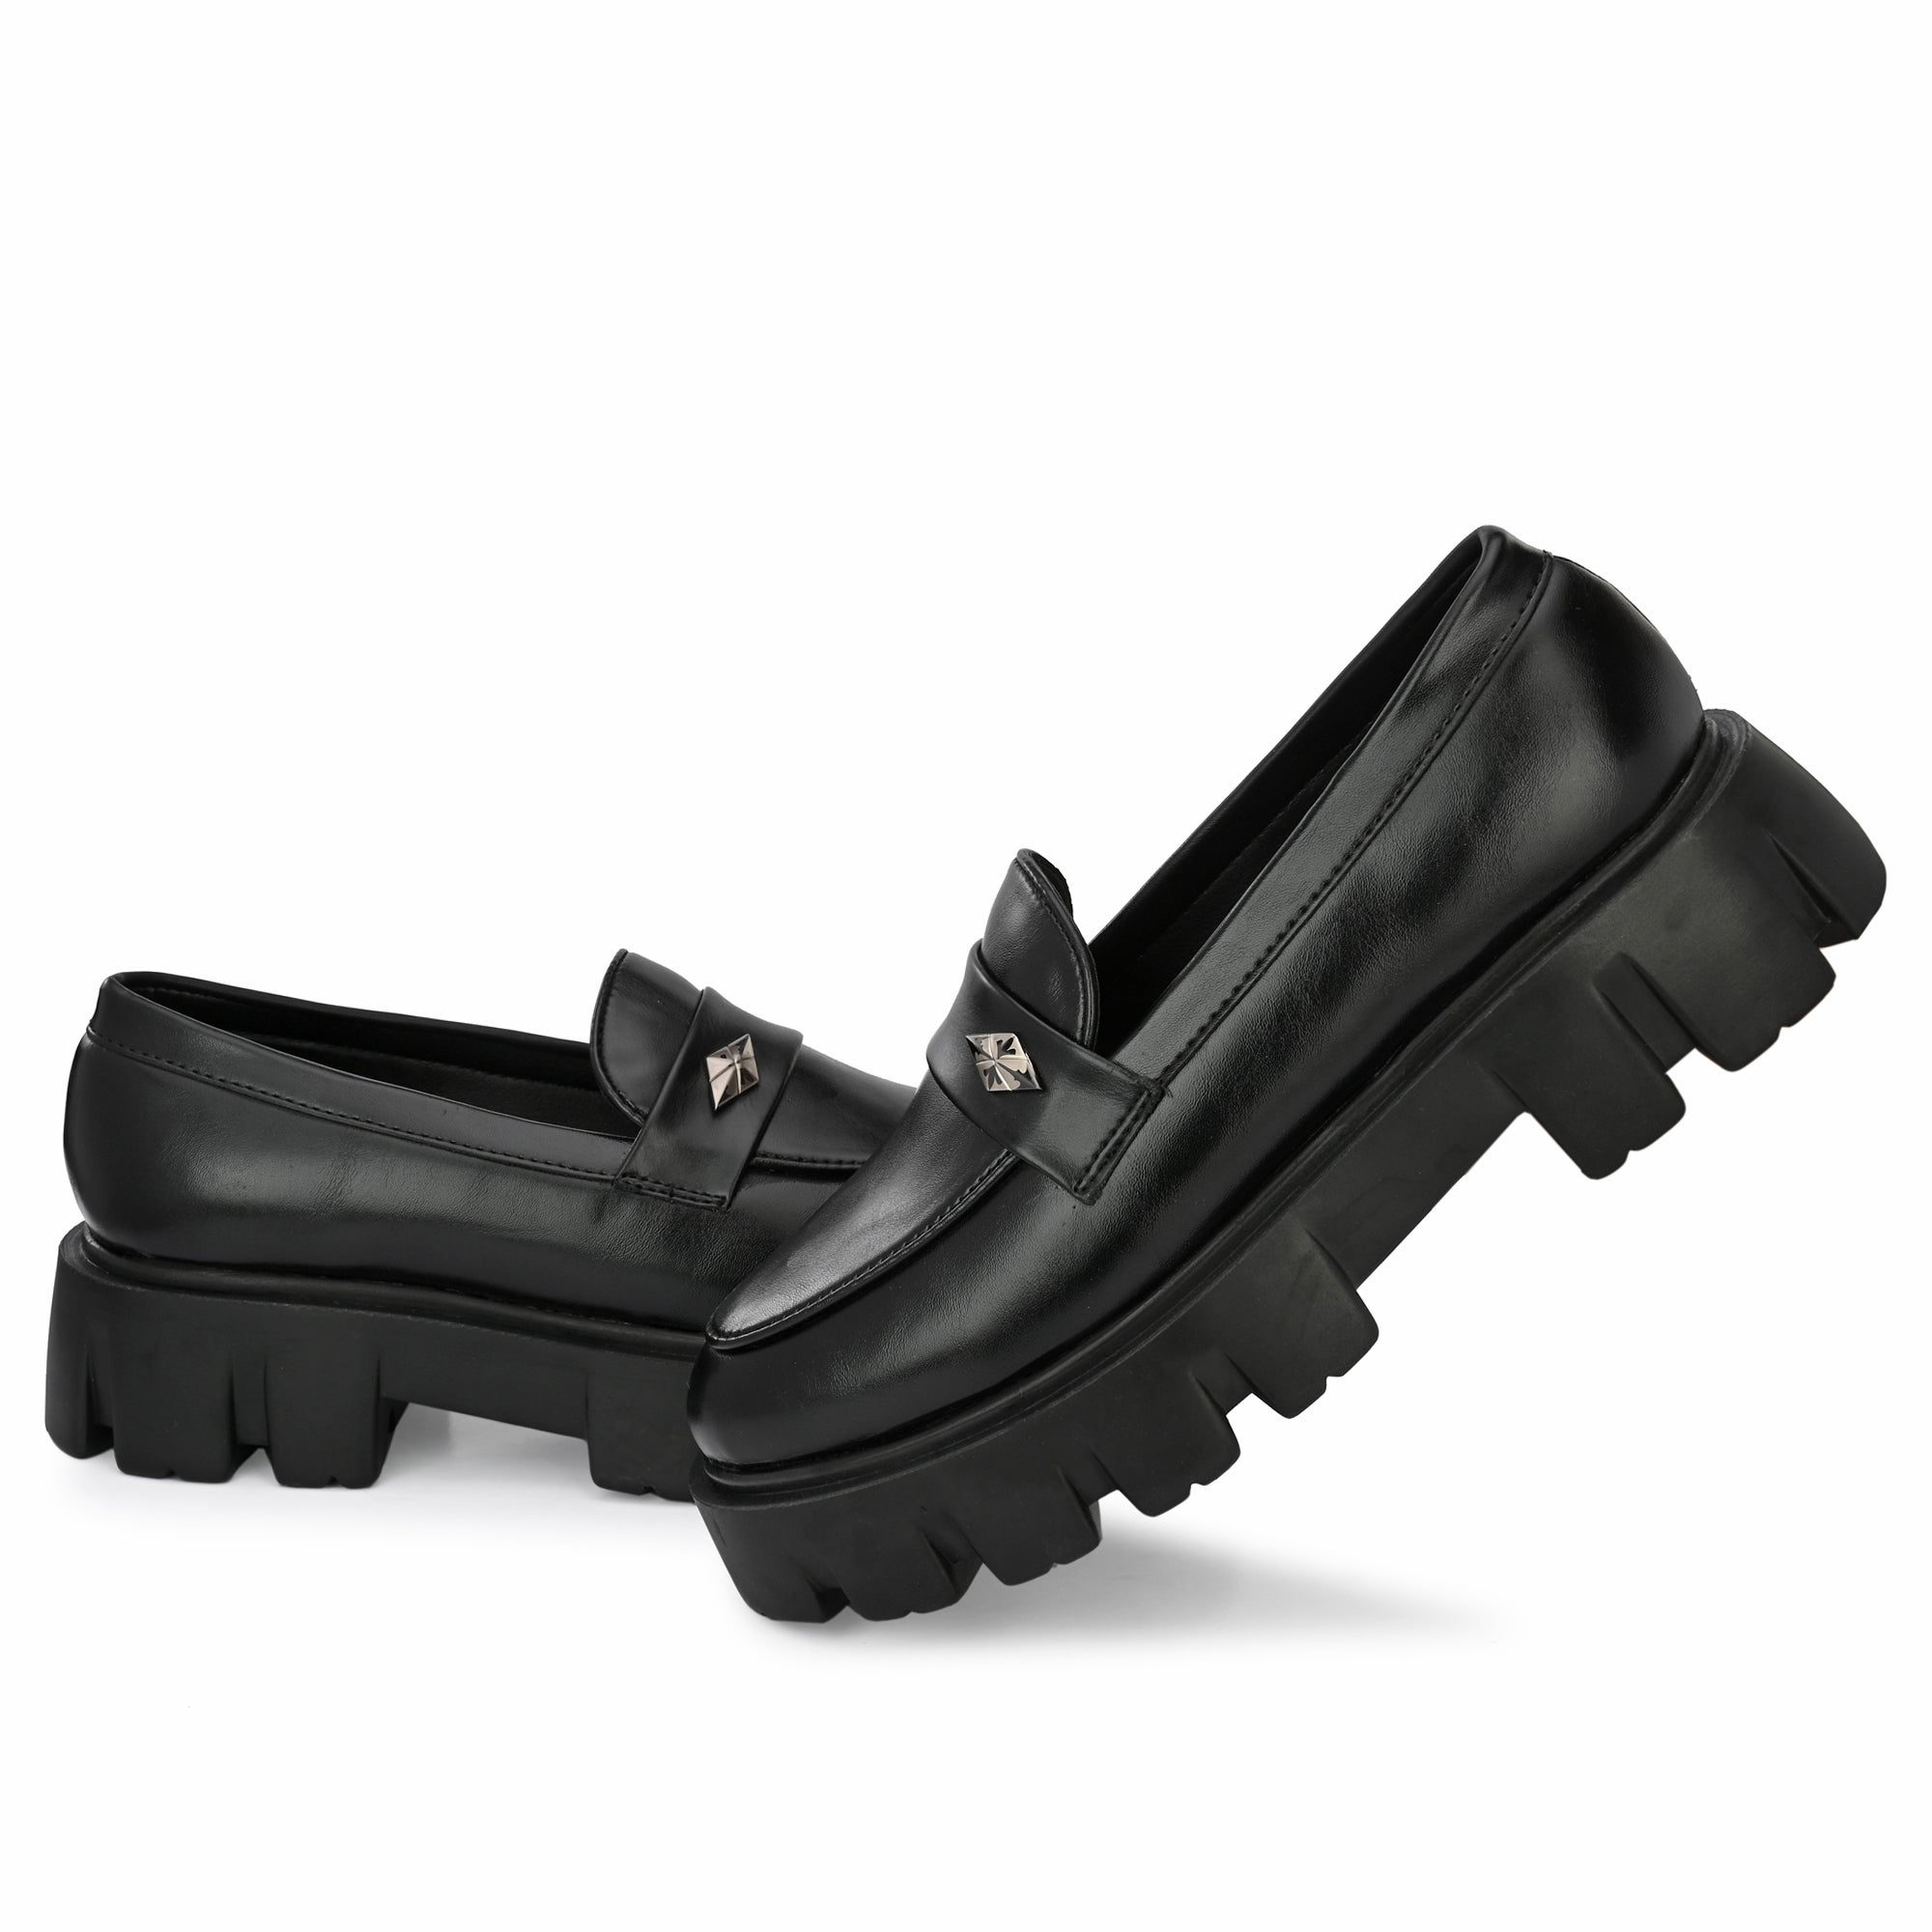 Attitudist Glossy Black High Heel Tassel Loafers For Men - ATTITUDIST